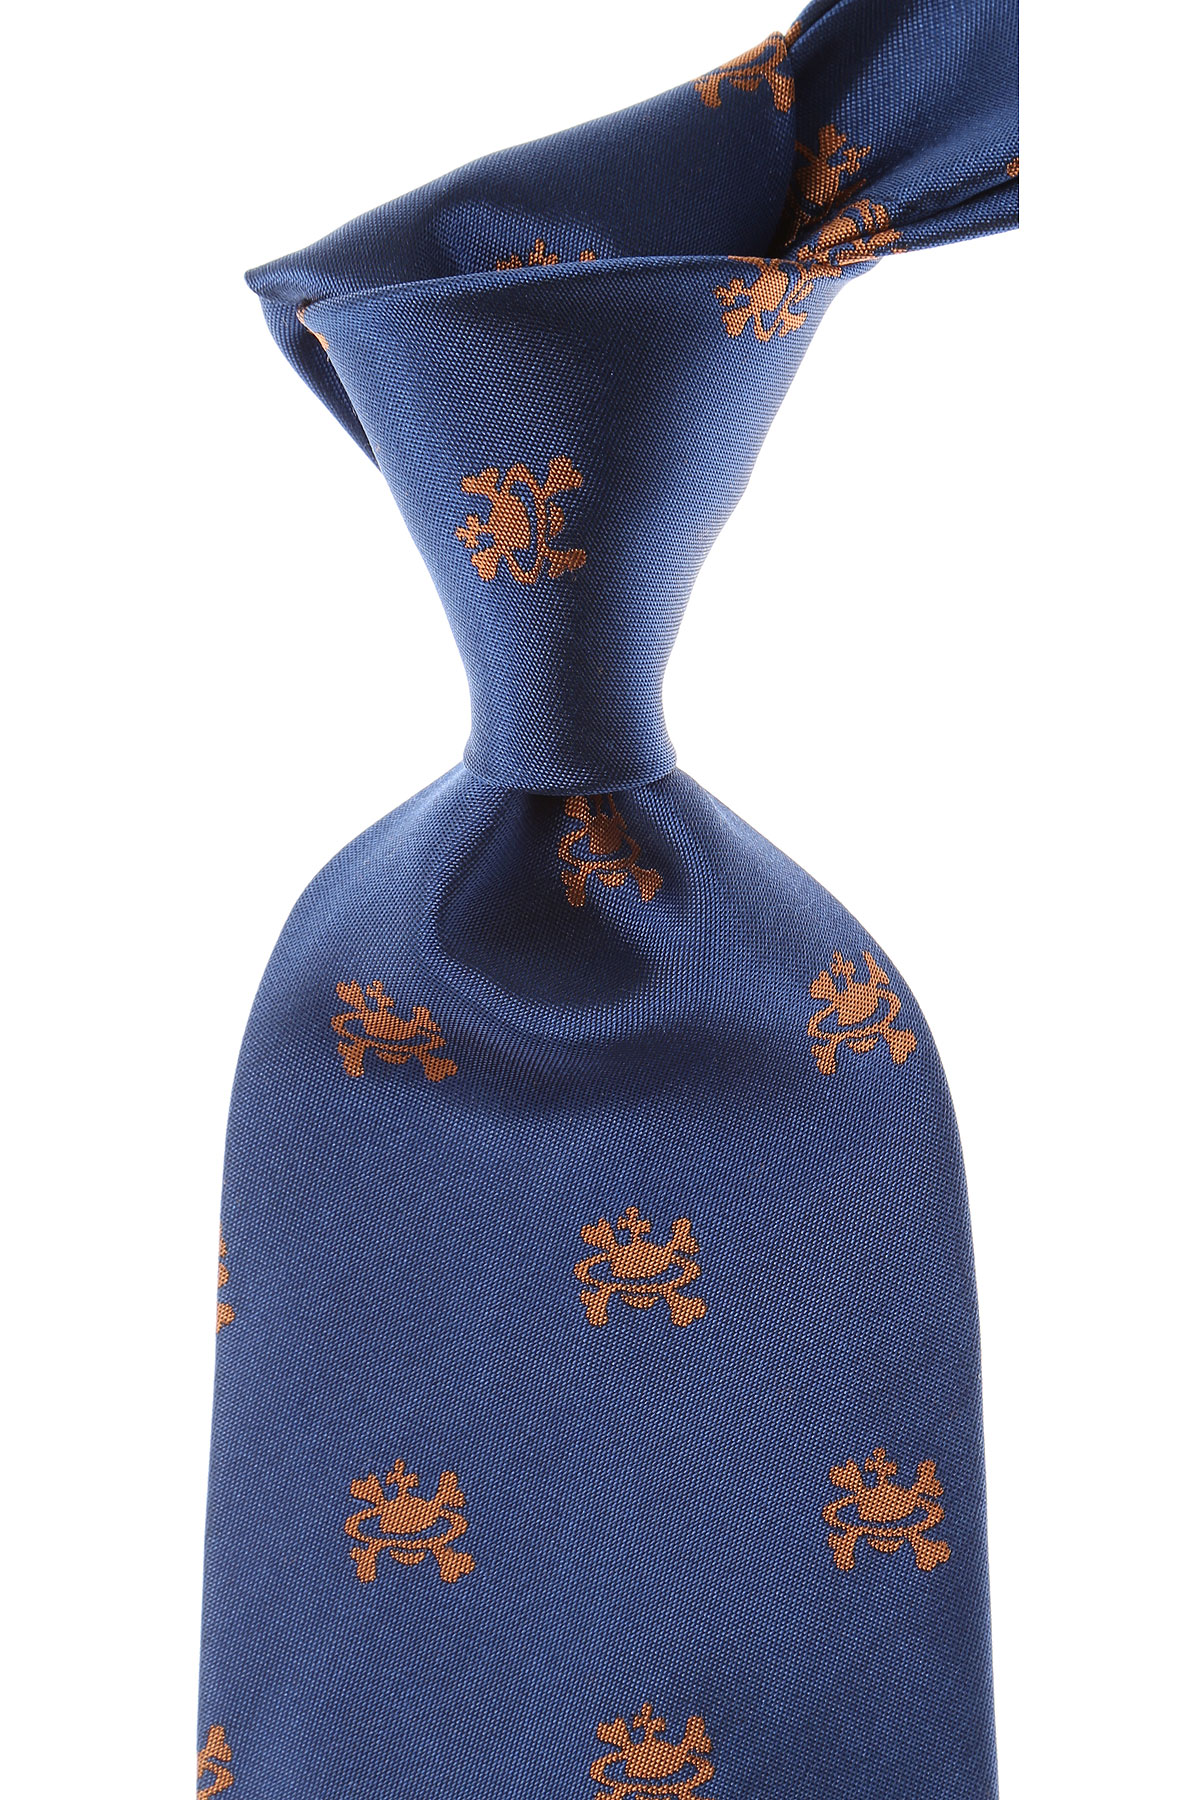 Cravates Vivienne Westwood , Bleu ciel, Soie, 2017